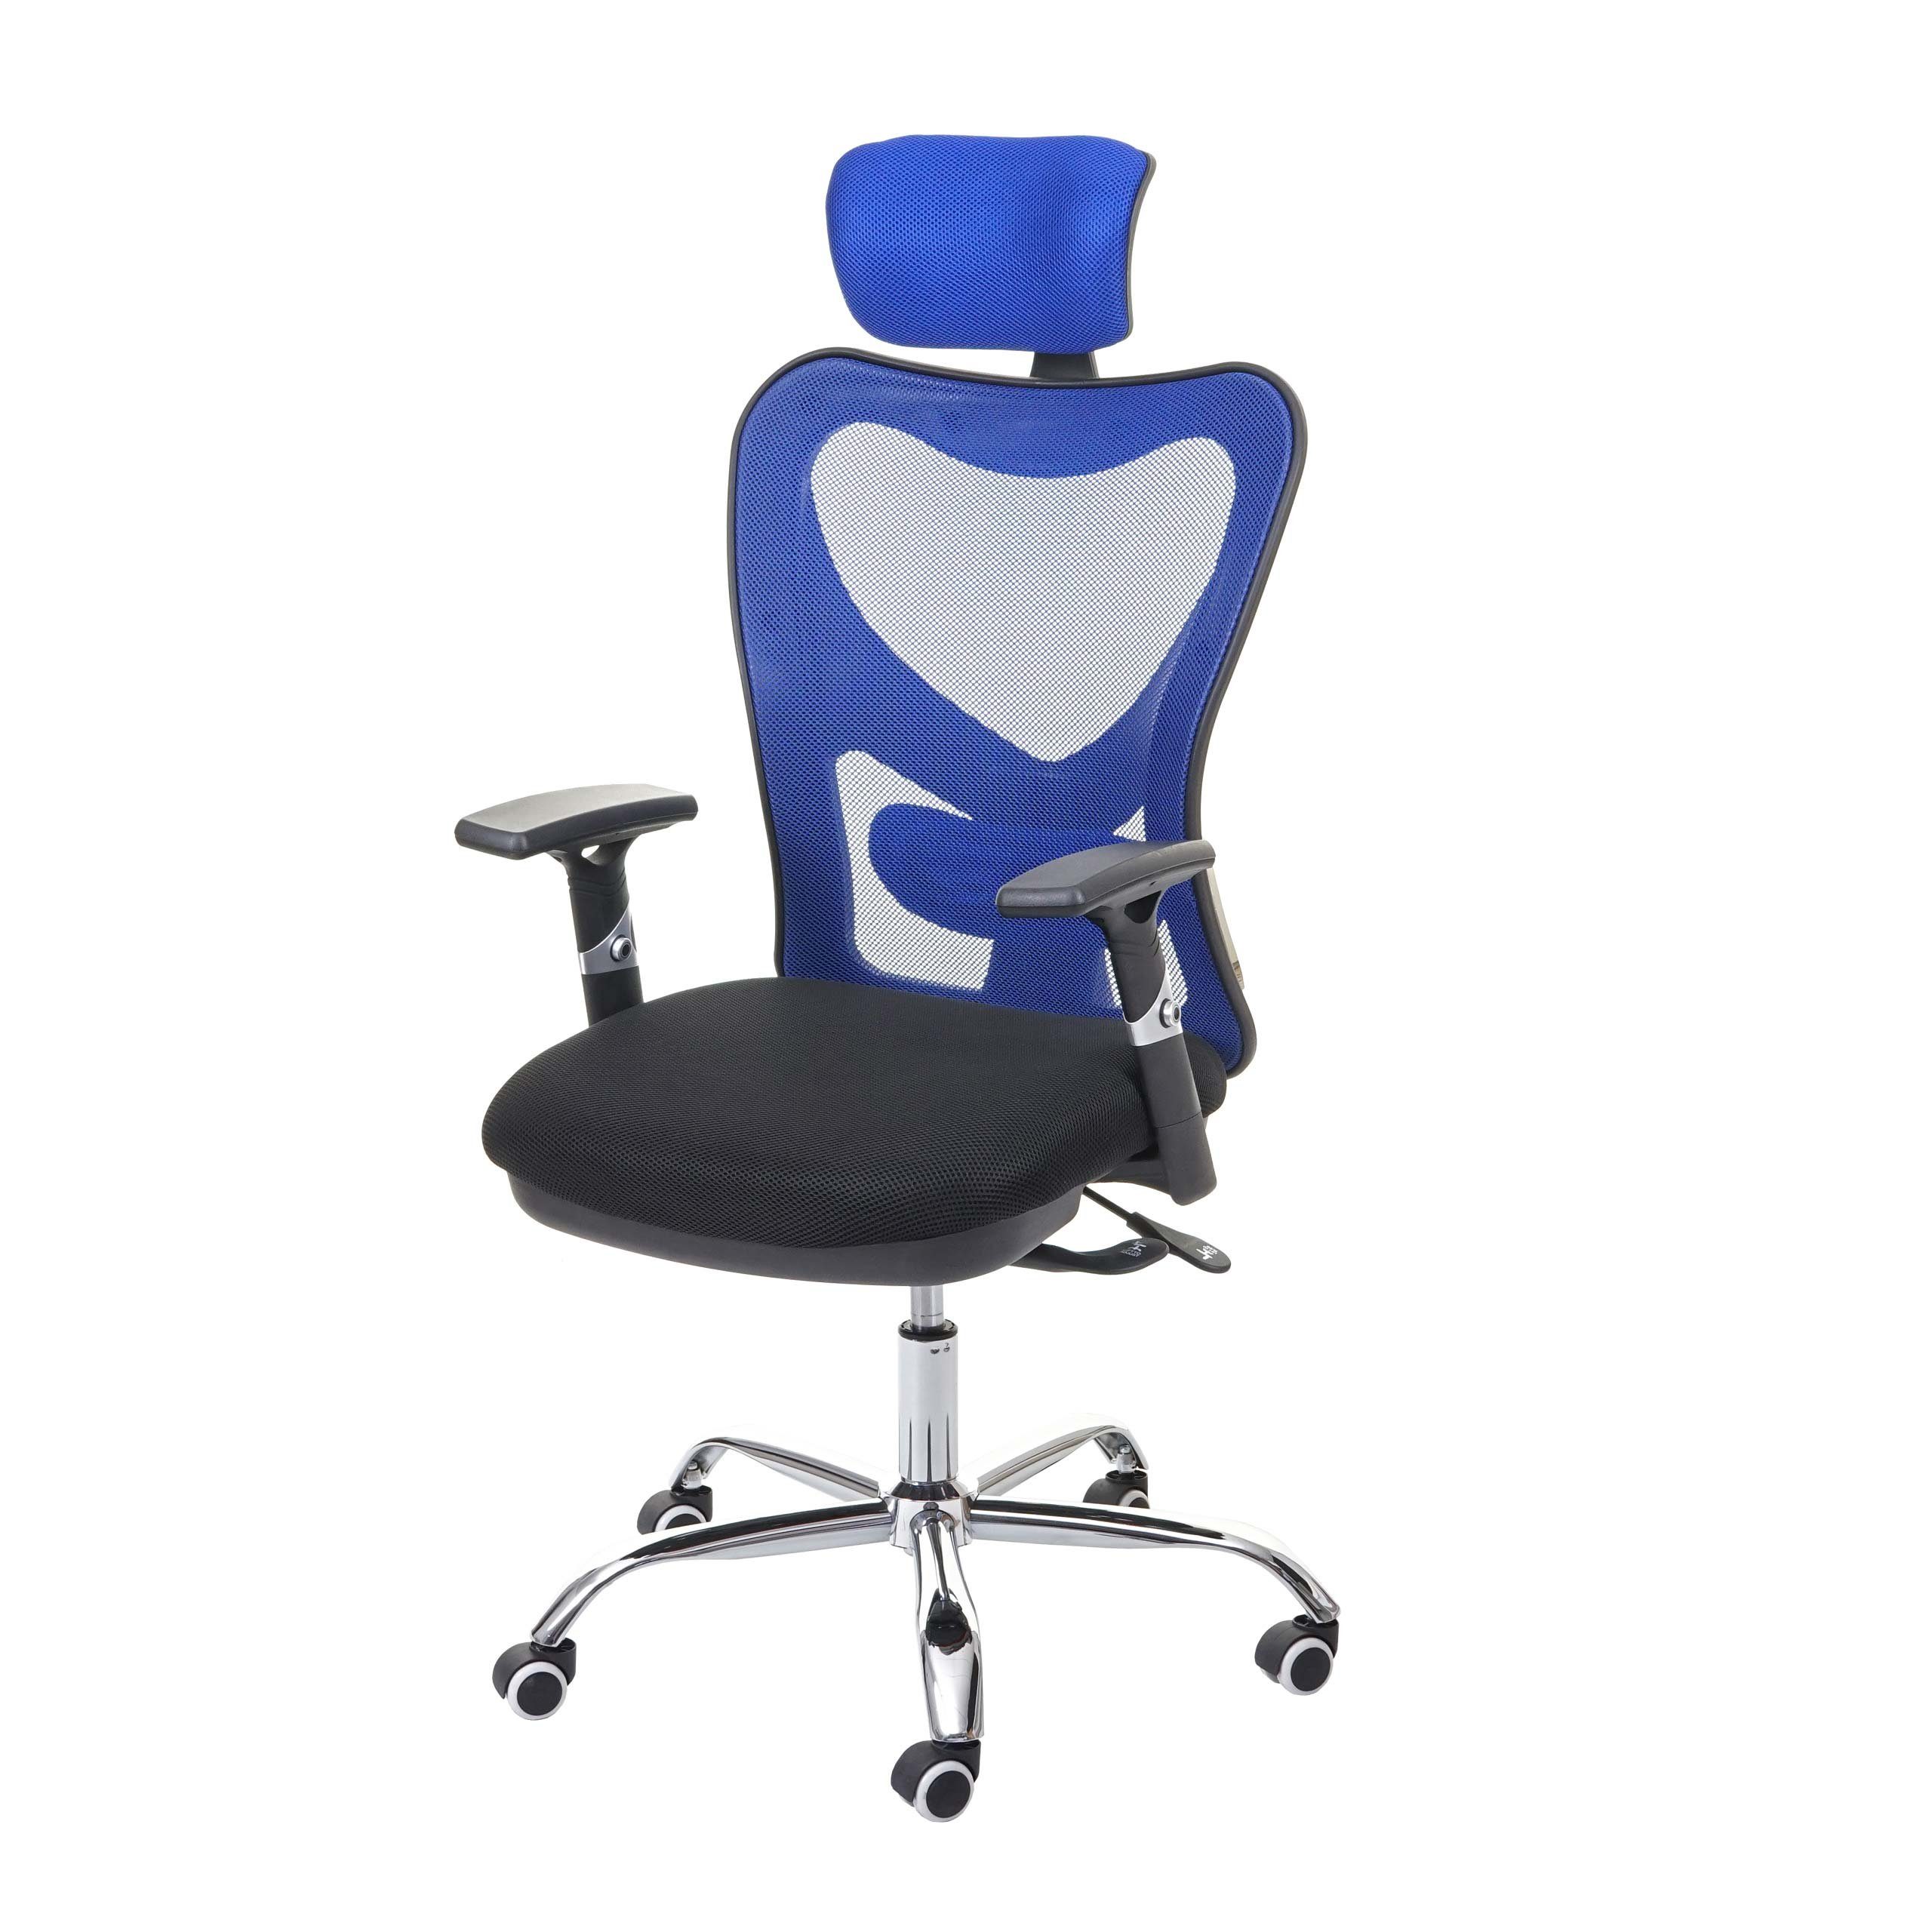 MCW Schreibtischstuhl MCW-F13, Armlehnen verstellbar, Sliding Funktion Sitzfläche, Netzbespannung schwarz/blau